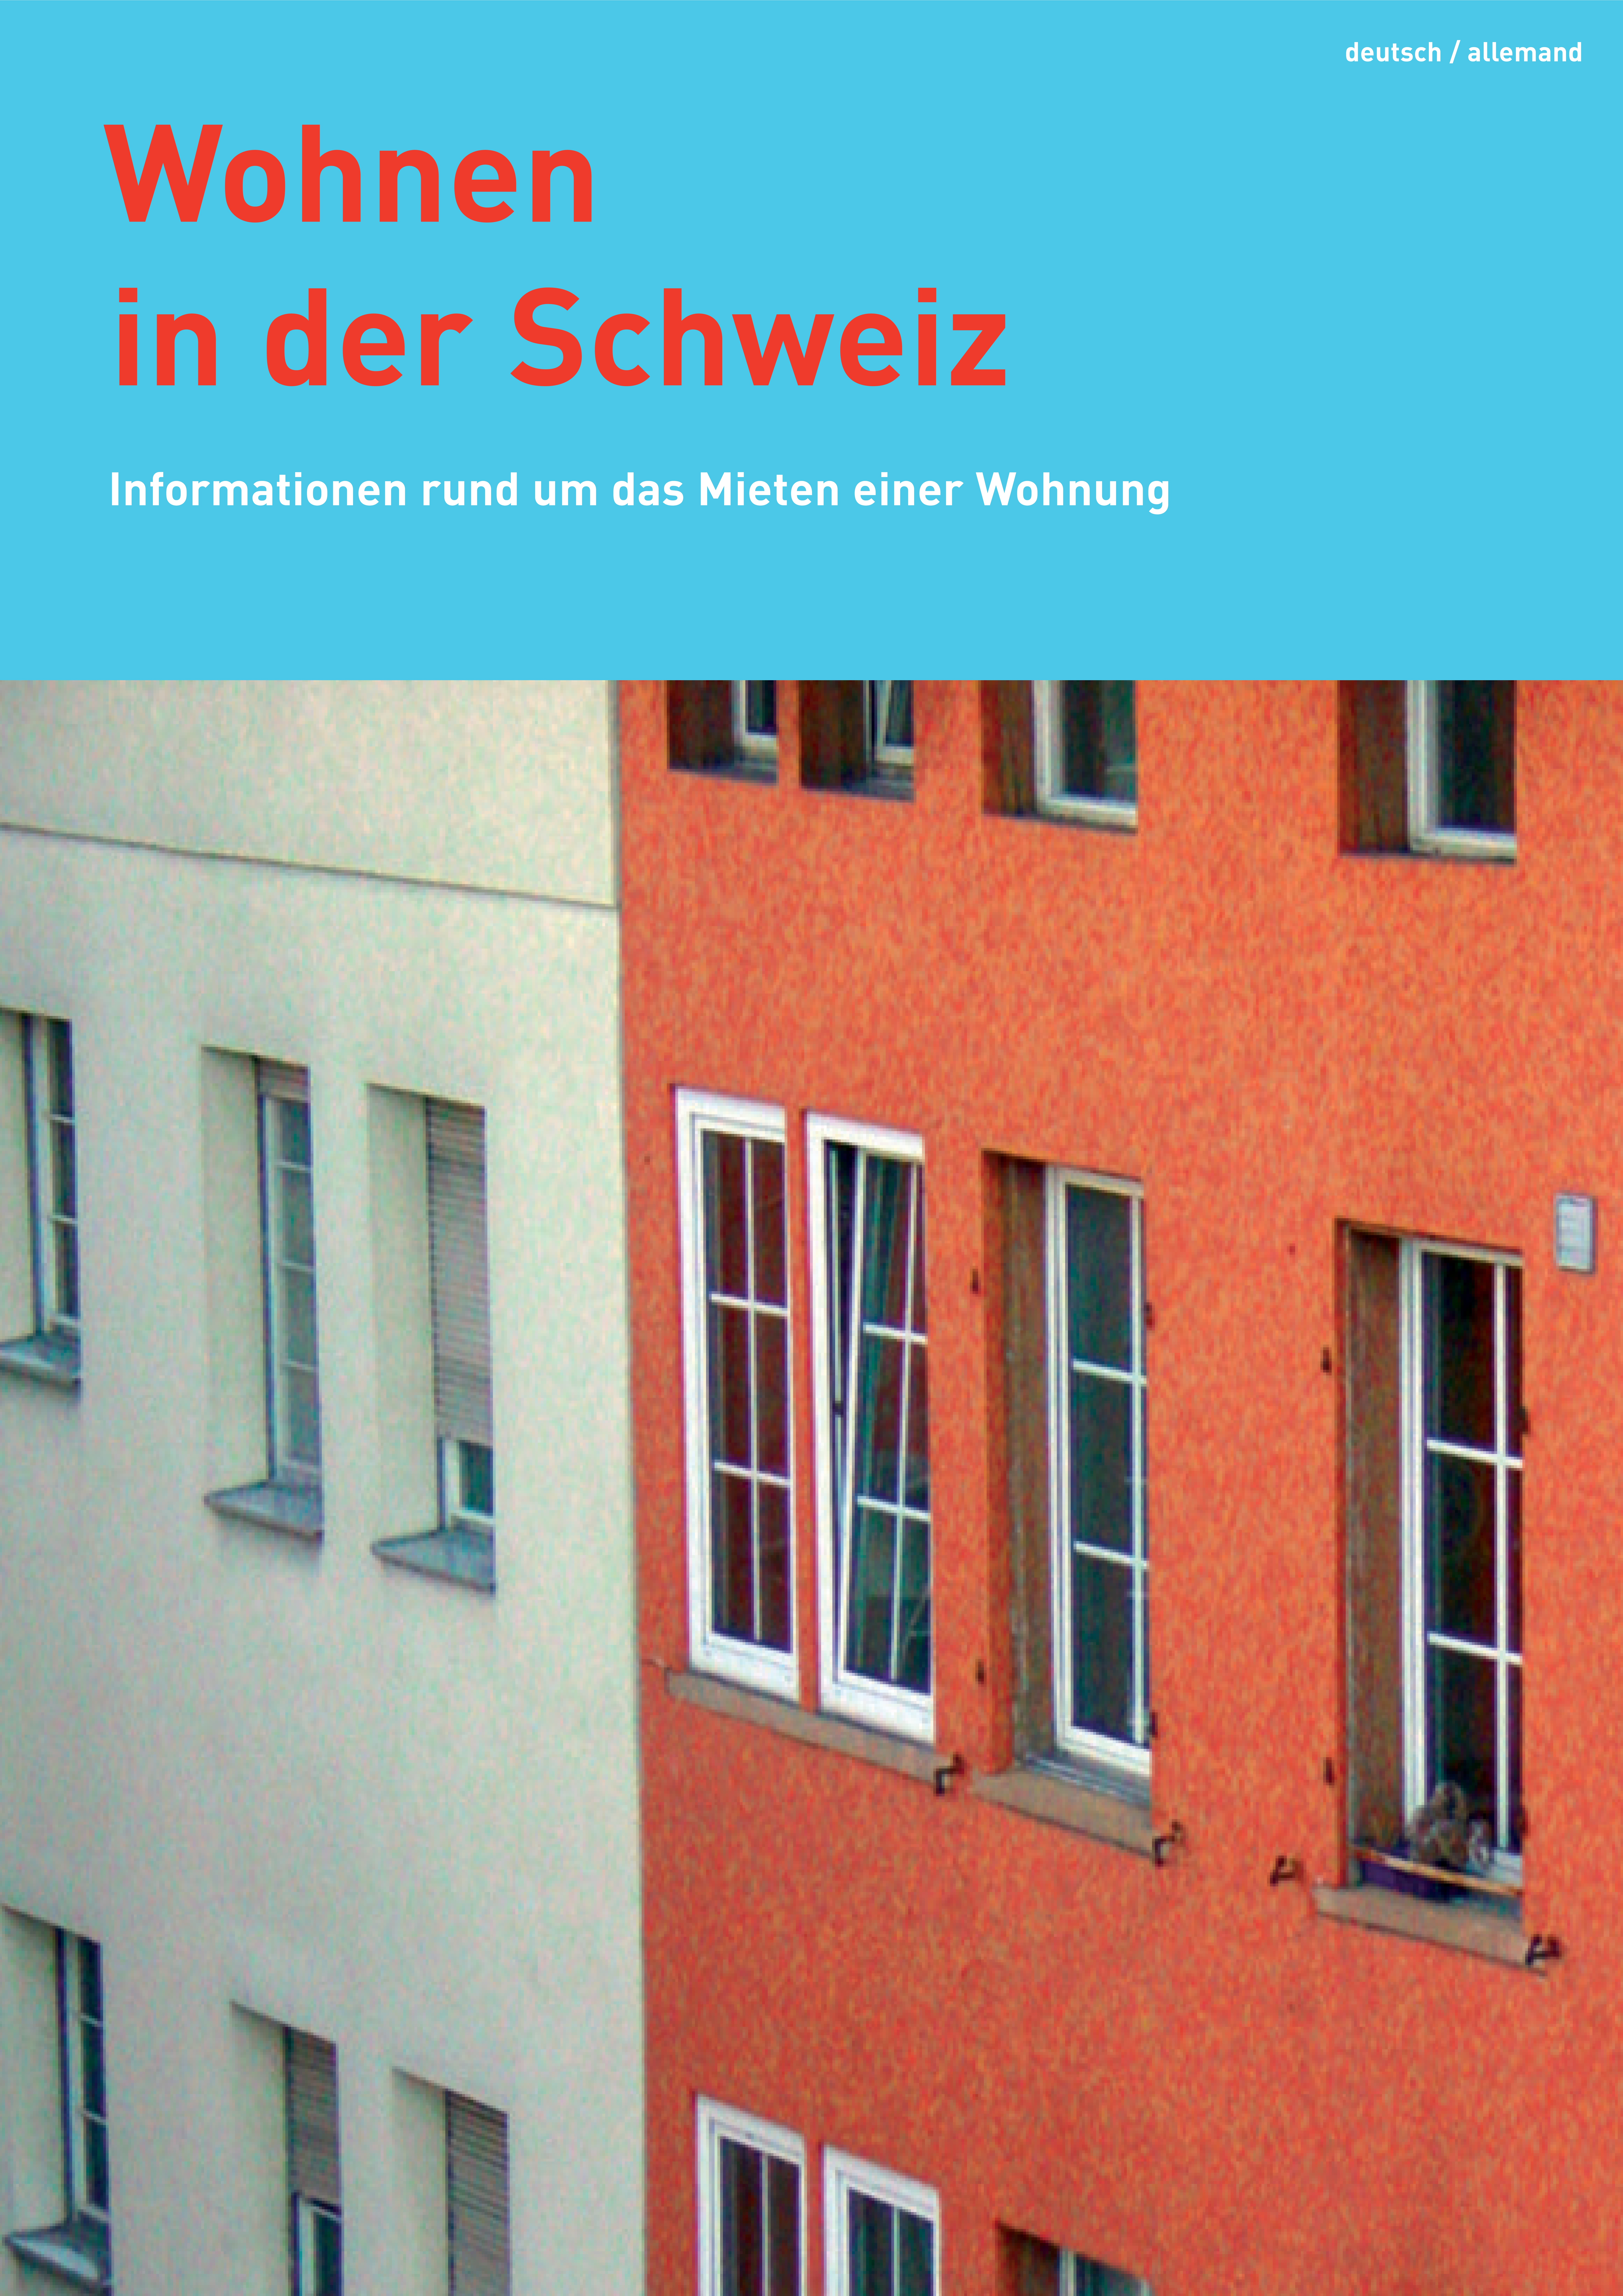 Titelbild Wohnen in der Schweiz deutsch